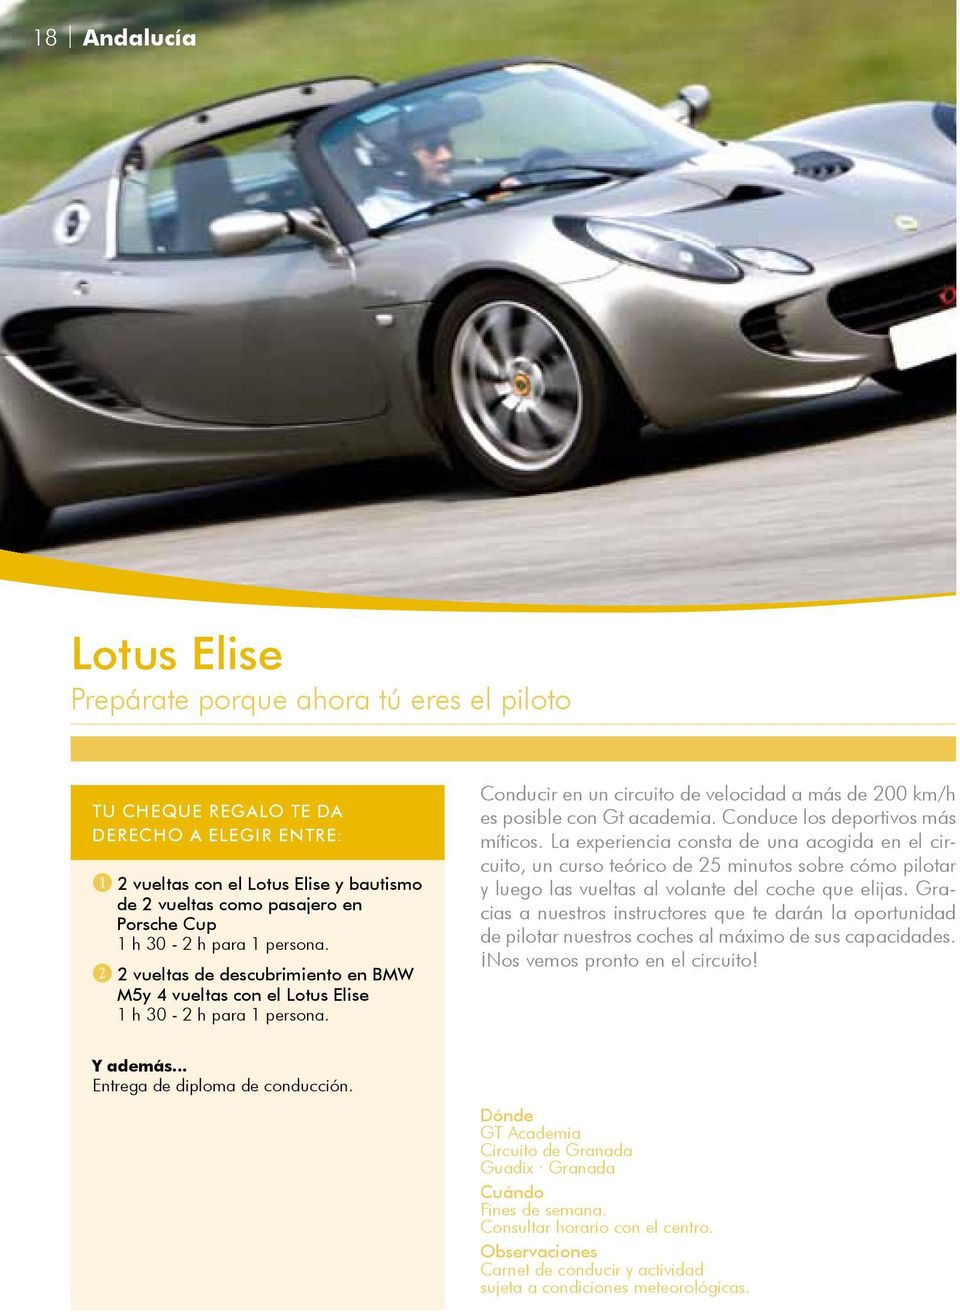 C 2 vueltas de descubrimiento en BMW M5y 4 vueltas con el Lotus Elise 1 h 30-2 h para 1 persona. Conducir en un circuito de velocidad a más de 200 km/h es posible con Gt academia.